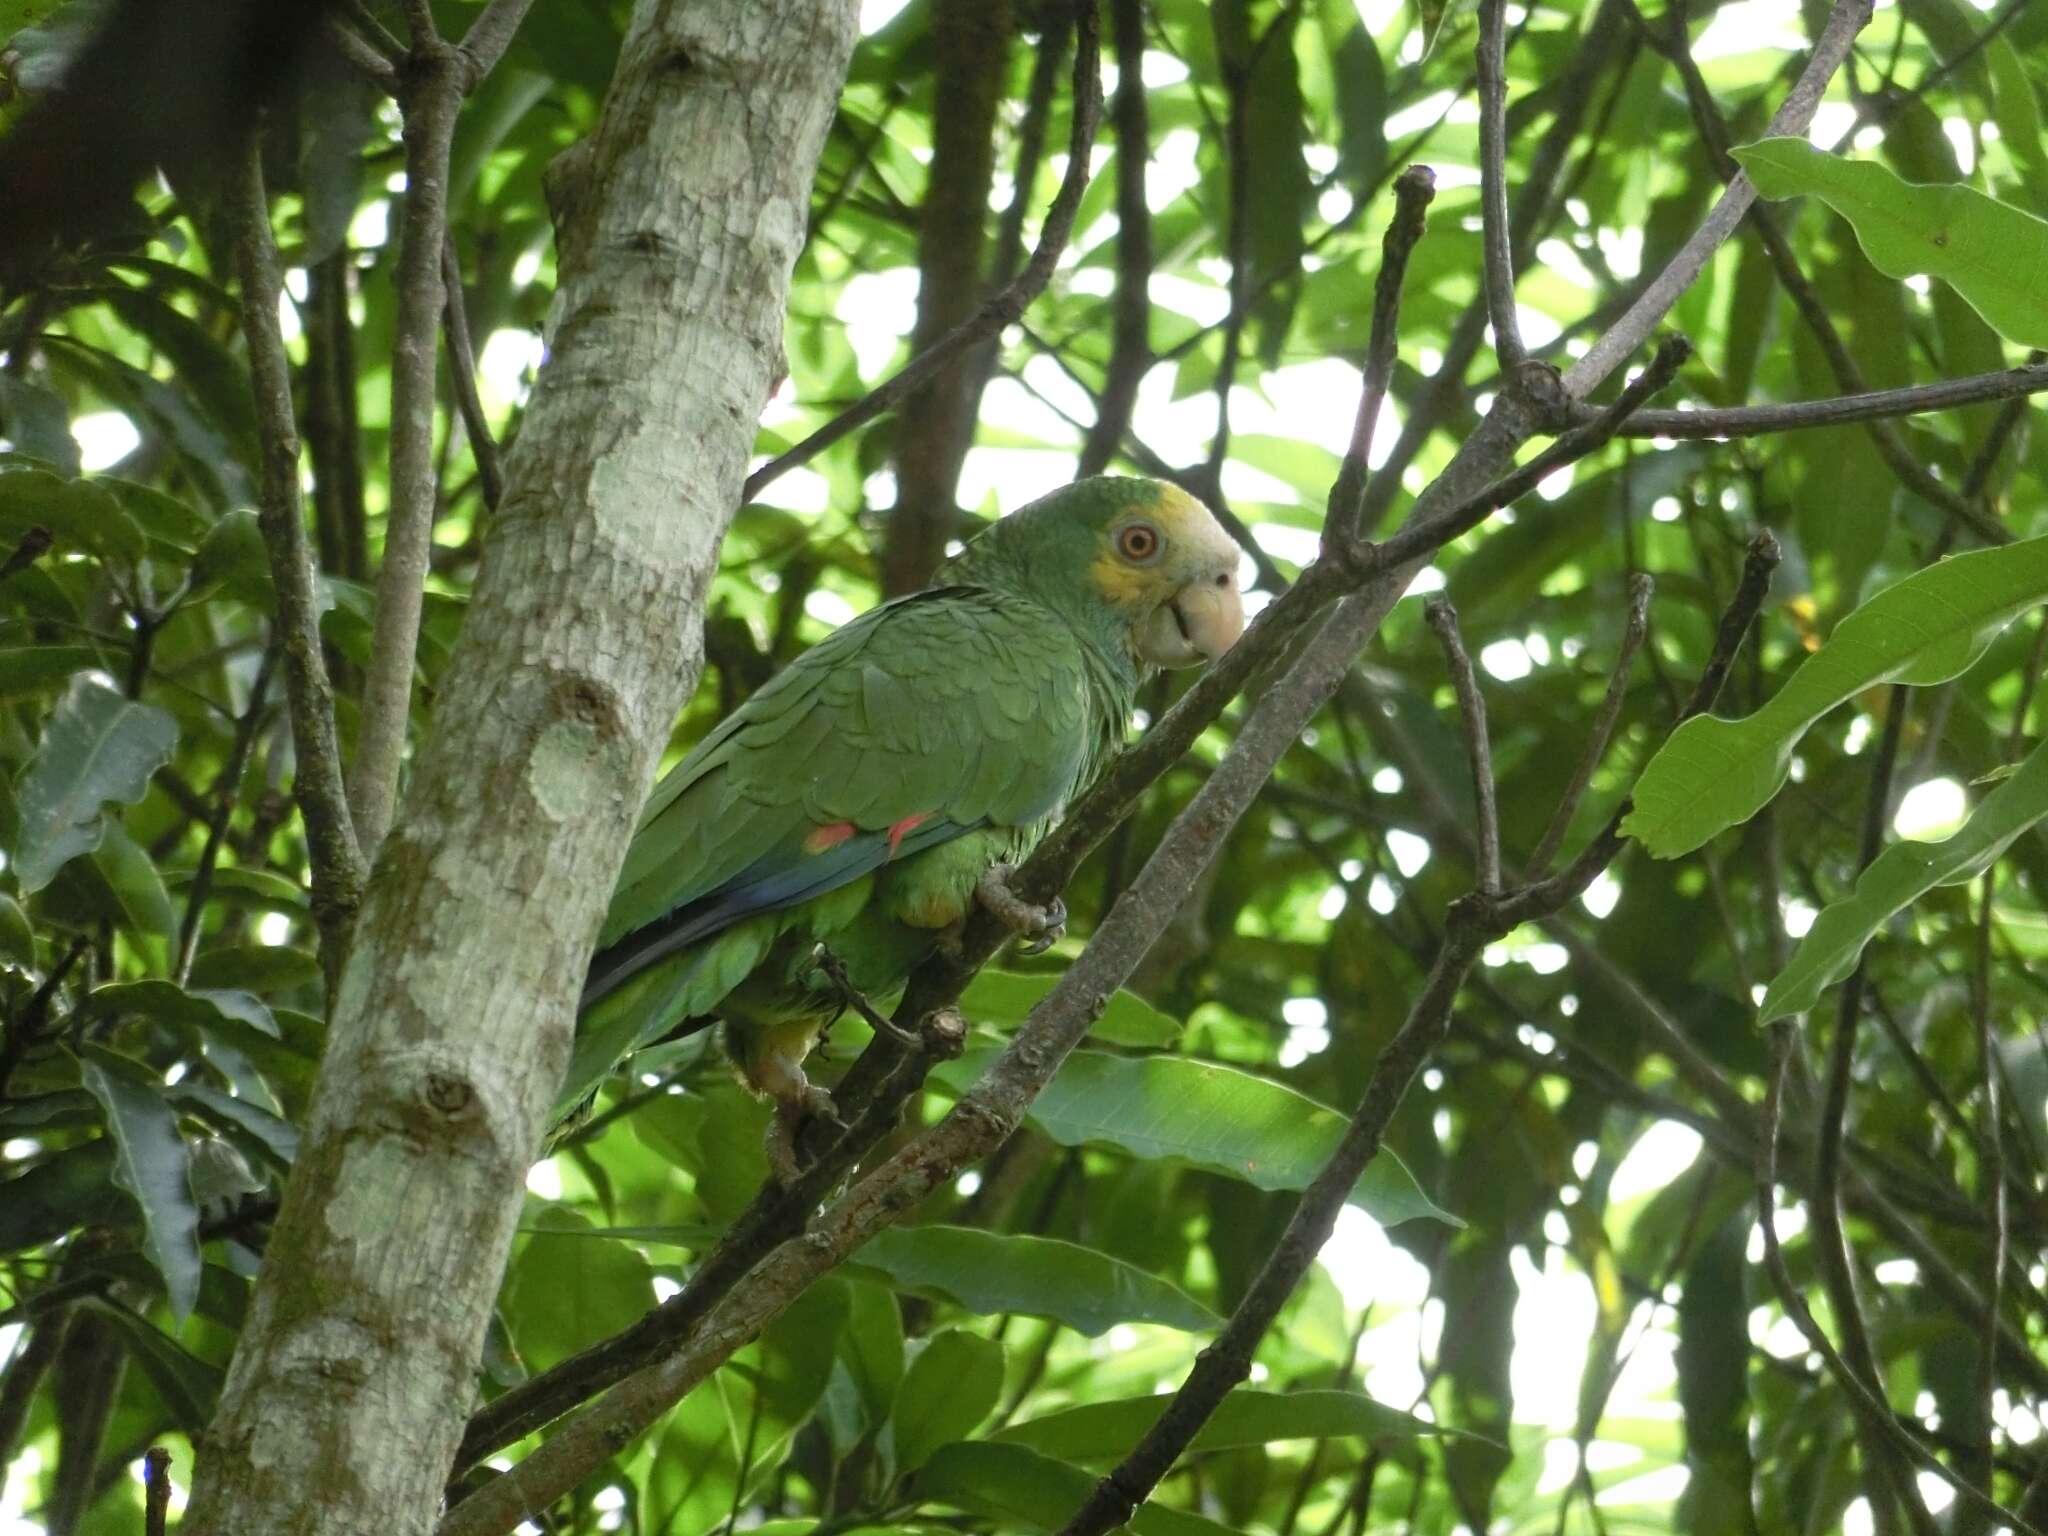 Image of Yellow-shouldered Amazon